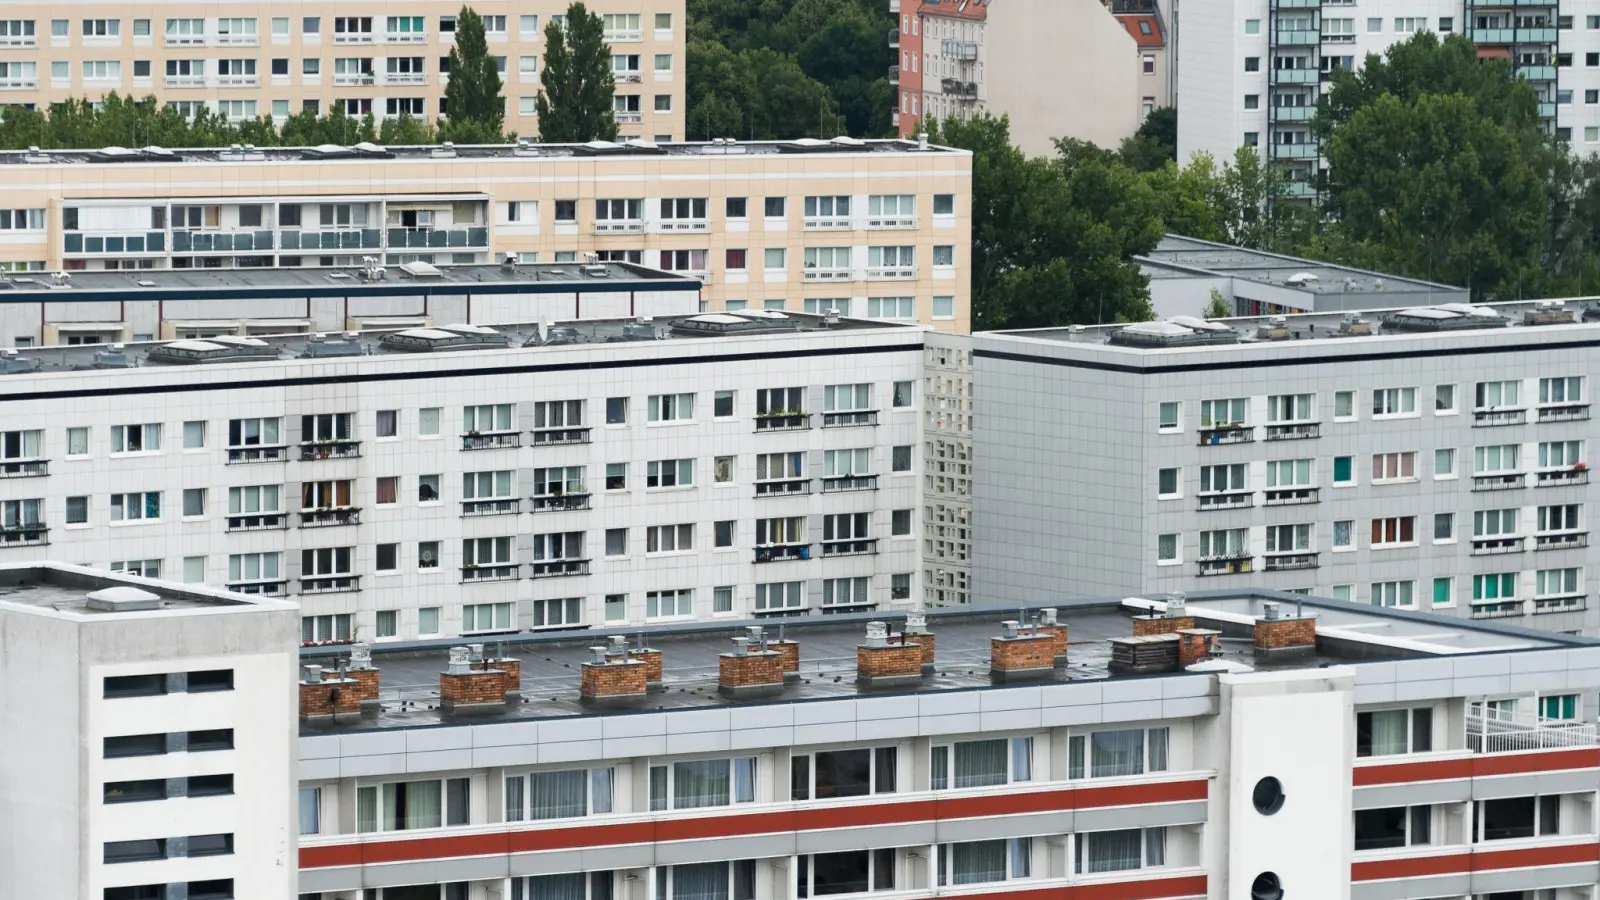 Die Jahresbeiträge für Wohngebäude könnzten nach Berechnungen um zwei bis dreistellige Summen steigen. (Foto: Lukas Schulze/dpa)